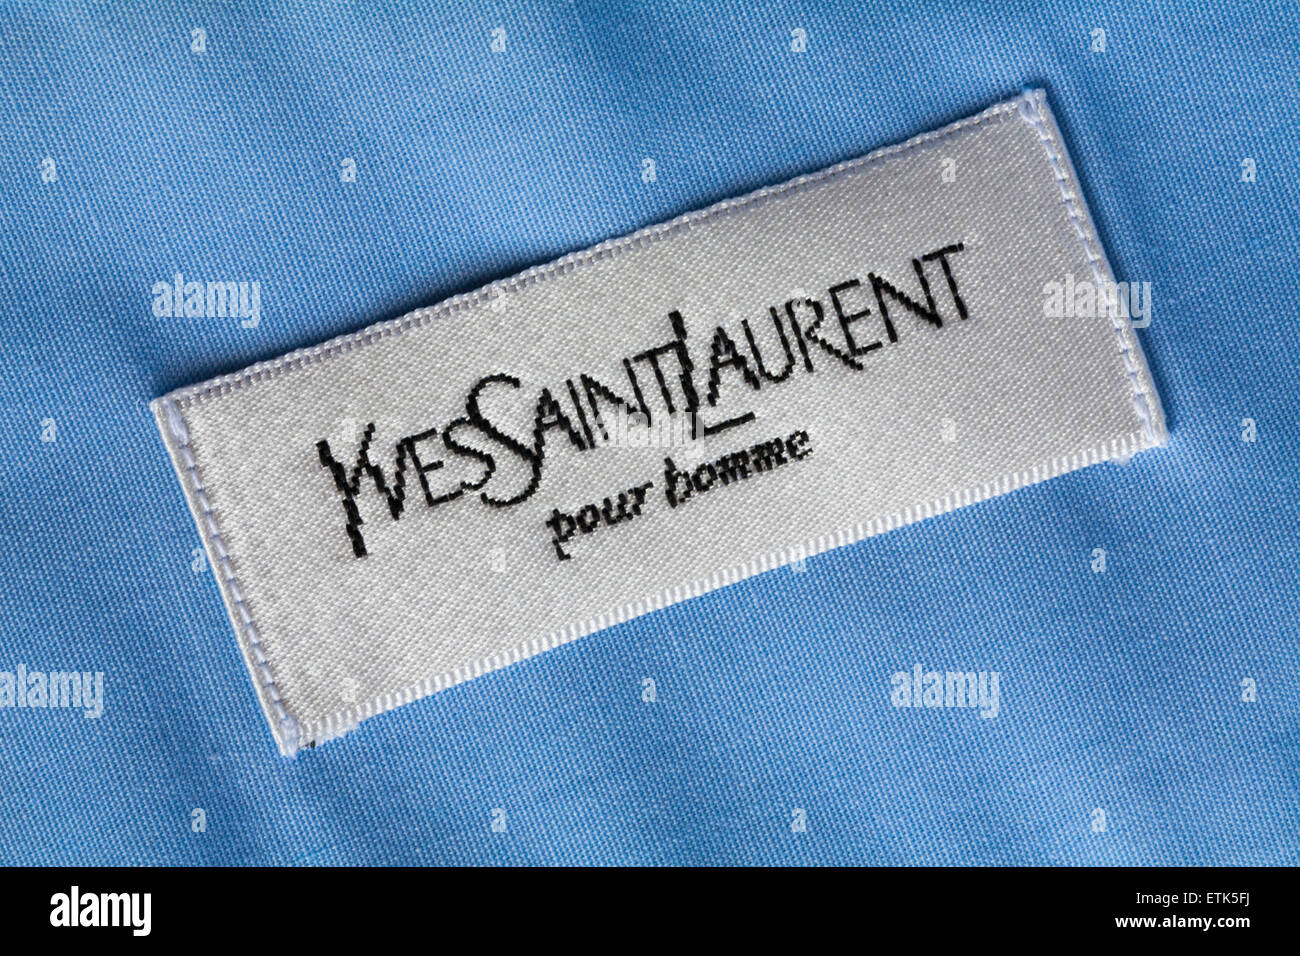 Yves Saint Laurent Pour Homme Shirt | vlr.eng.br